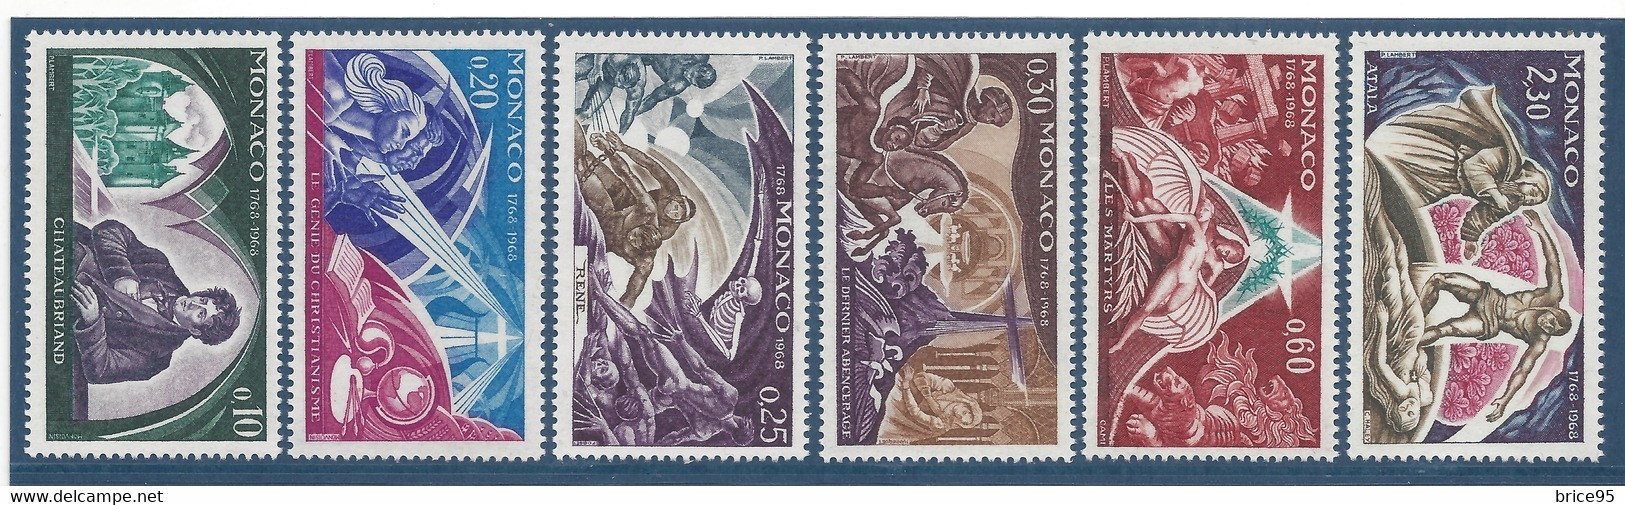 Monaco - YT N° 758 à 763 ** - Neuf Sans Charnière - 1968 - Unused Stamps